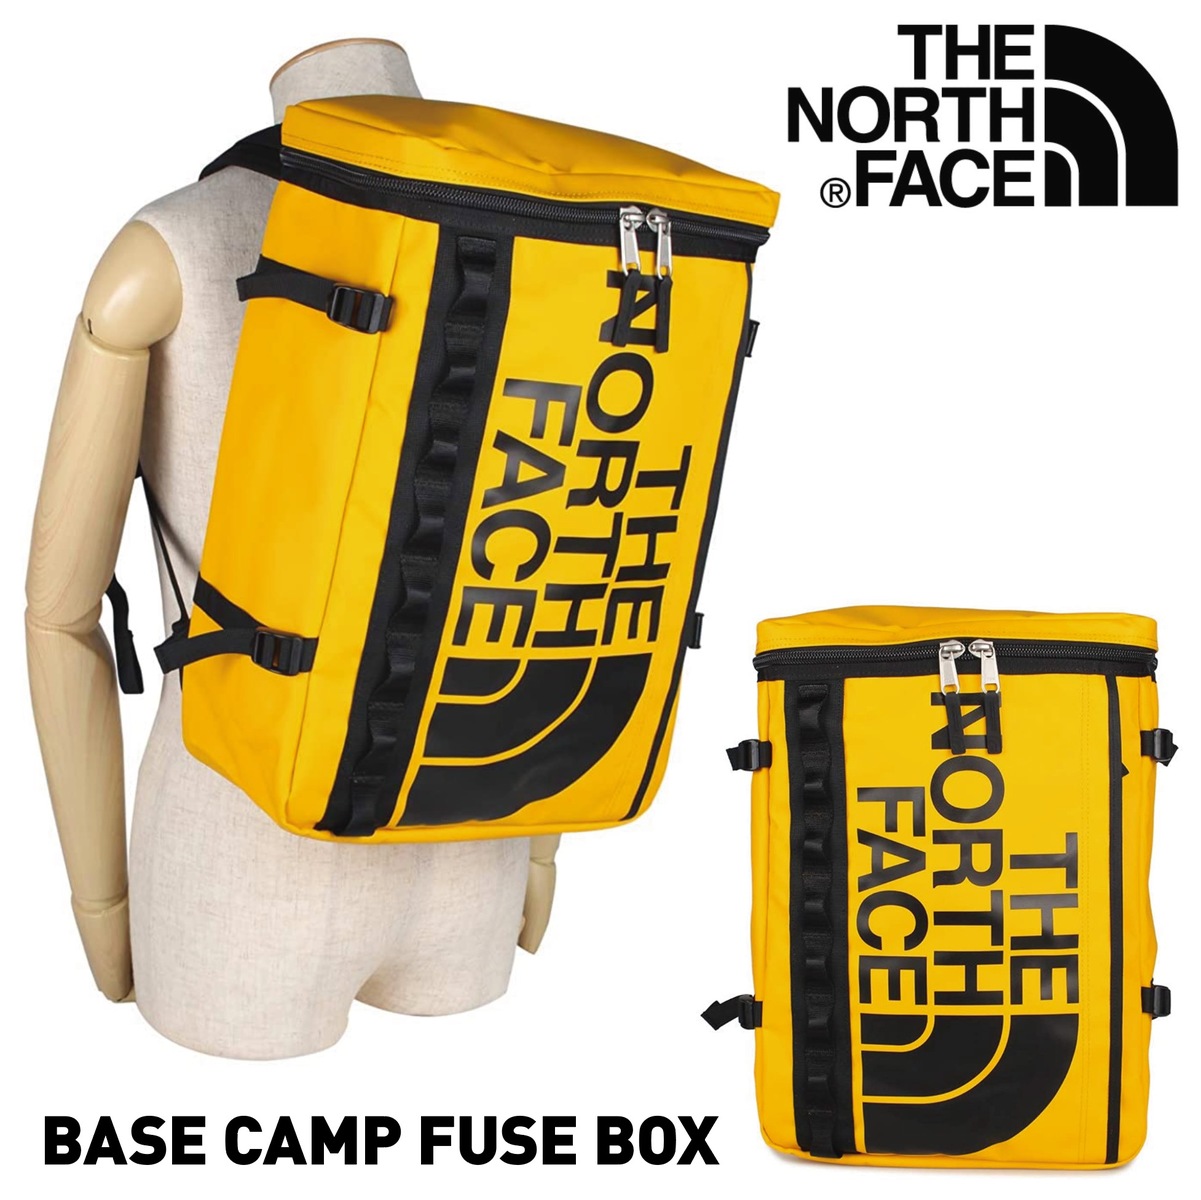 楽天市場 The North Face Nf0a3kvr 70m ベースキャンプヒューズボックス 大容量 30l Base Camp Fuse Box ヒューズボックス バッグ リュック バックパック キャンプ 登山 イエロー ノースフェイス 10 Apマーケット